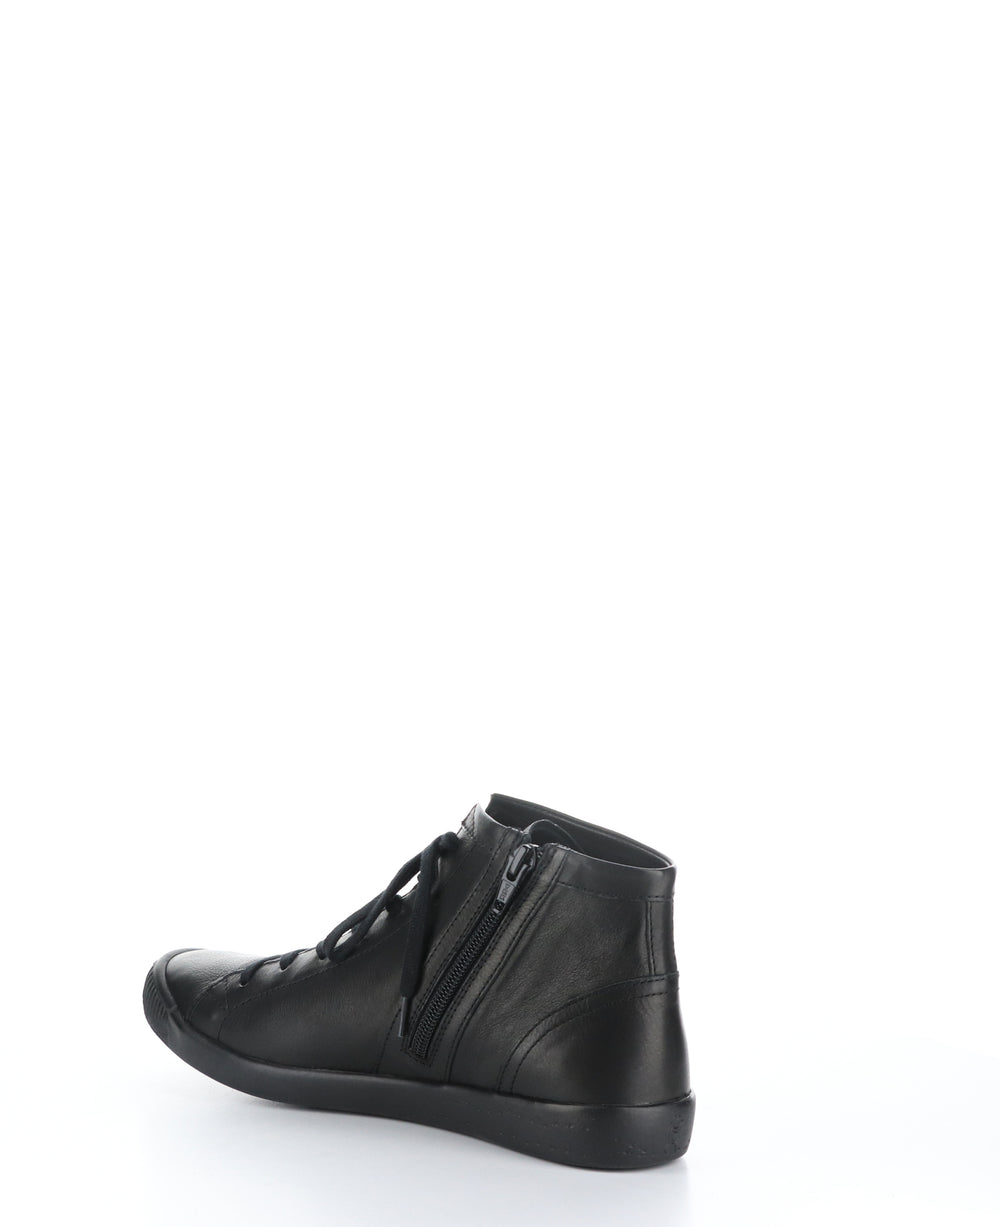 IBBI653SOF Black Round Toe Shoes